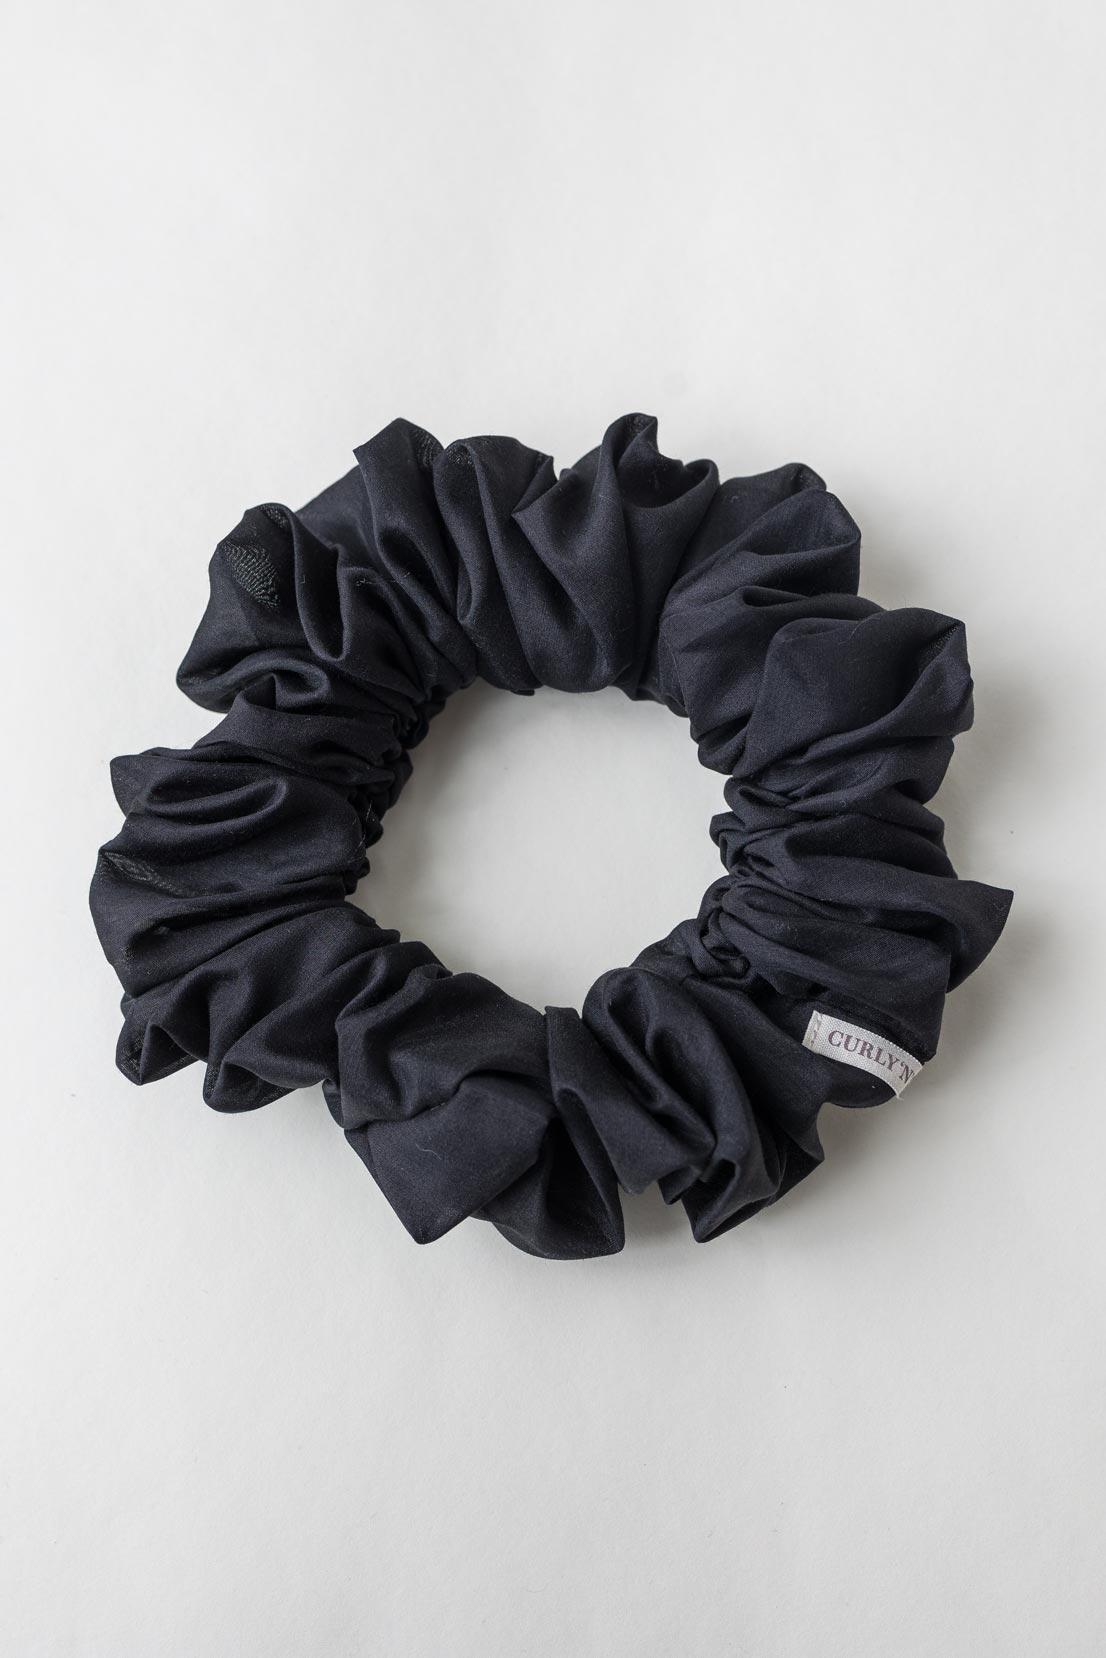 Scrunchie (Cotton-Silk) – Haargummi aus Baumwolle und Seide - Baumwollseide Schwarz / XXL